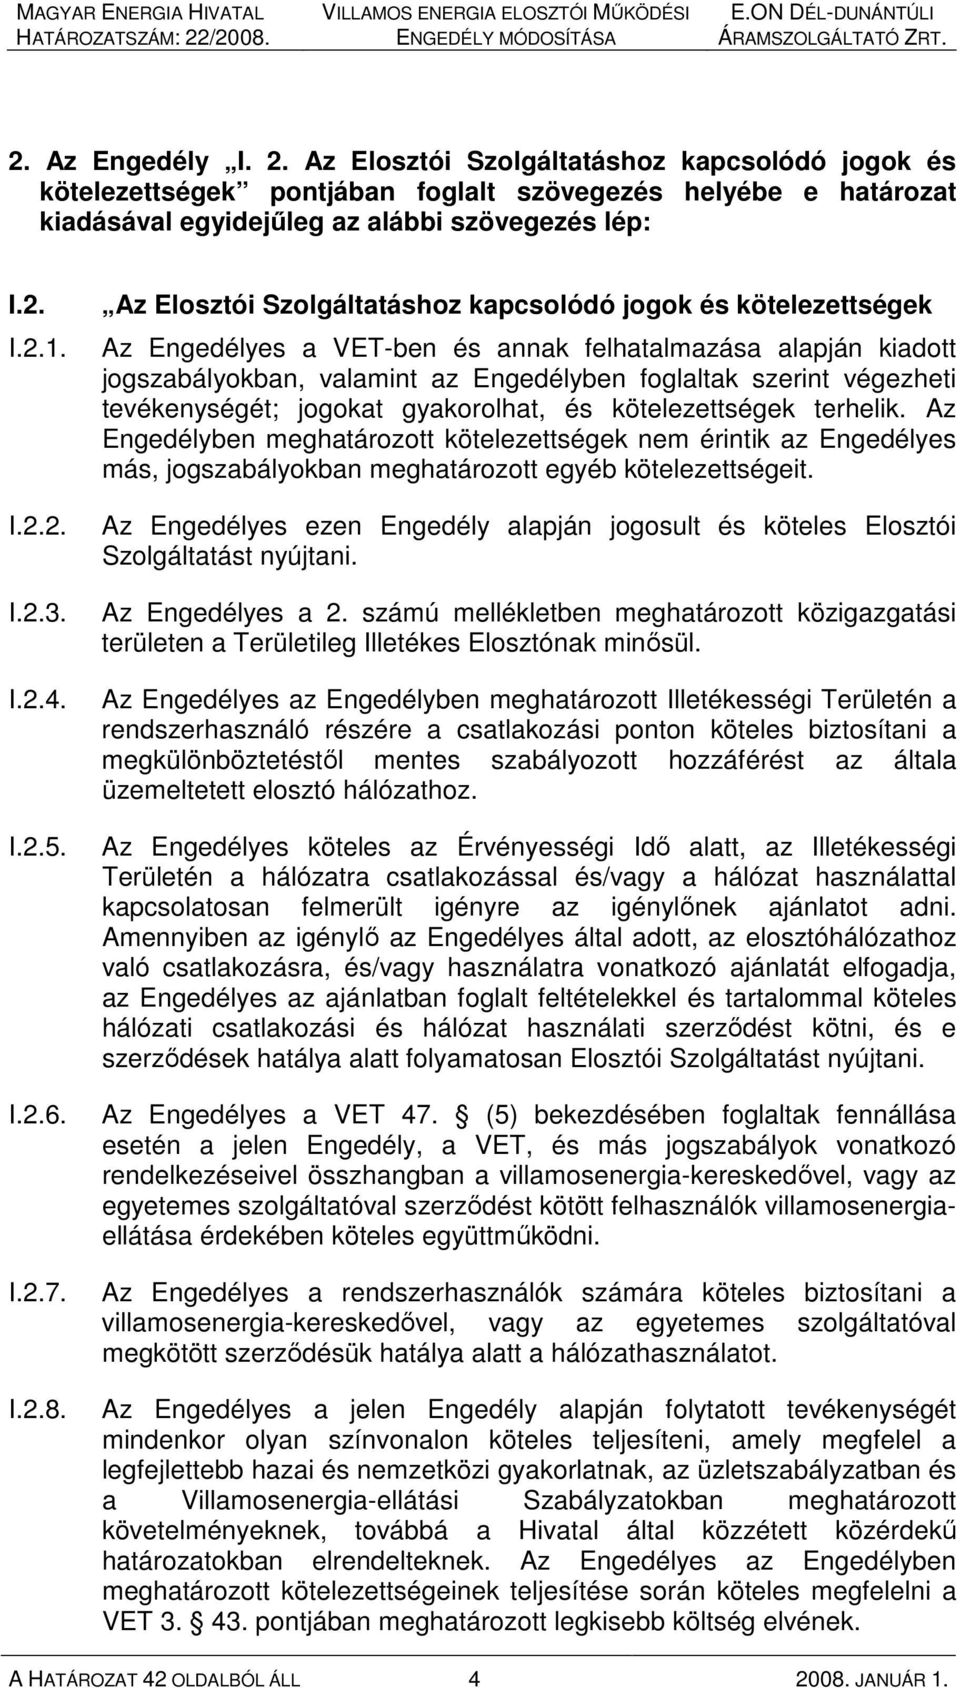 Az Elosztói Szolgáltatáshoz kapcsolódó jogok és kötelezettségek Az Engedélyes a VET-ben és annak felhatalmazása alapján kiadott jogszabályokban, valamint az Engedélyben foglaltak szerint végezheti